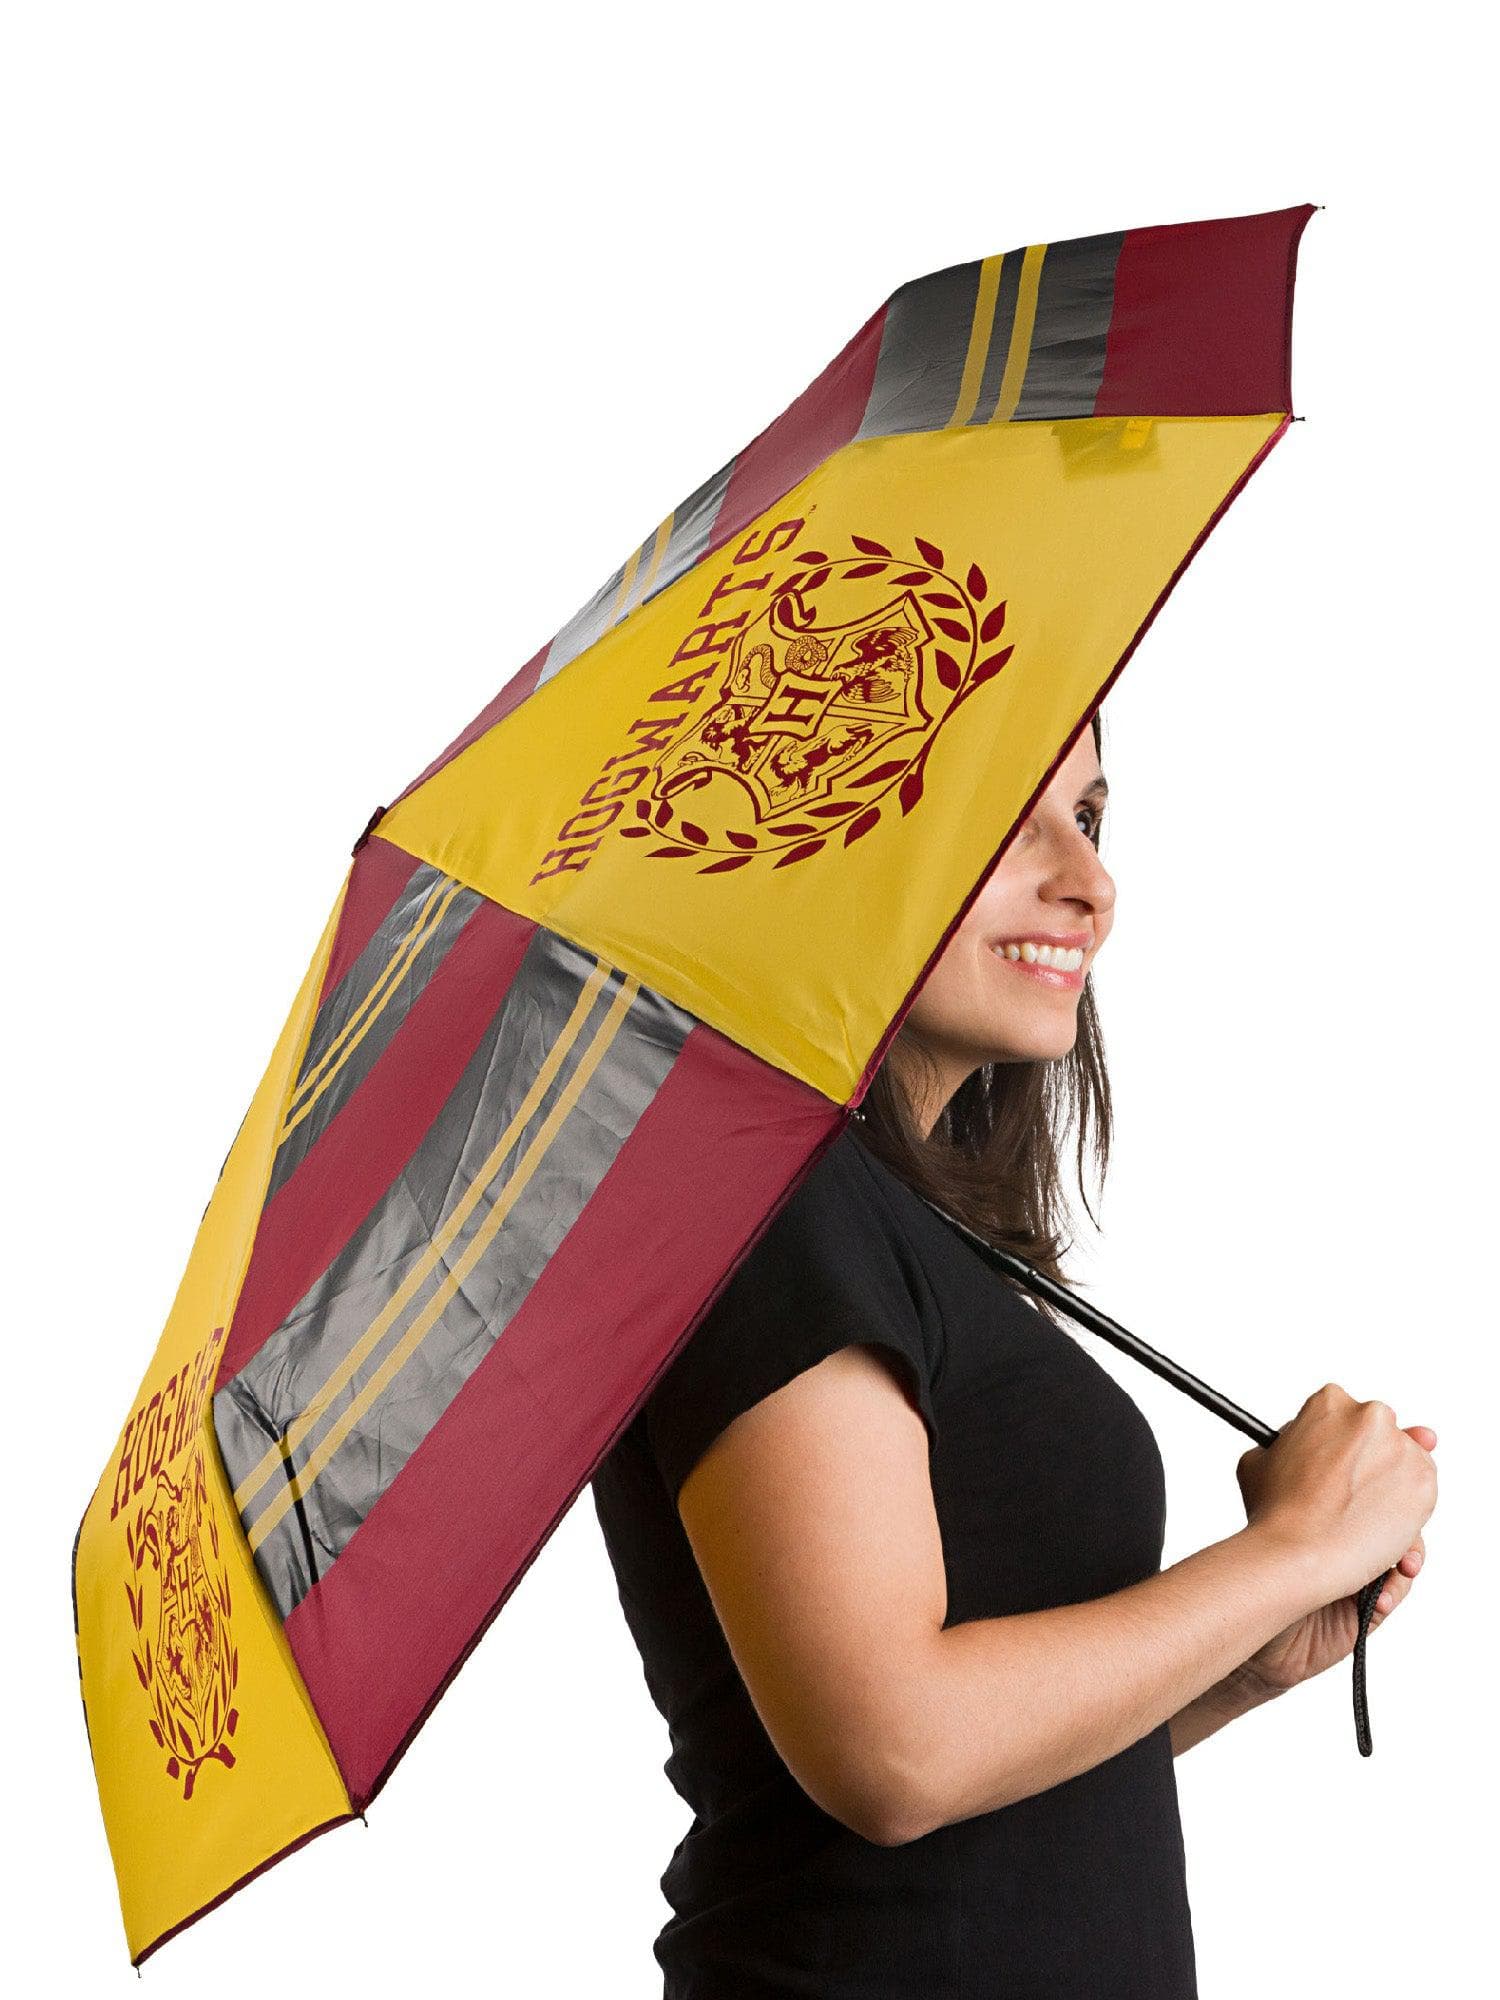 Harry Potter "Hogwarts Crest" Umbrella - costumes.com